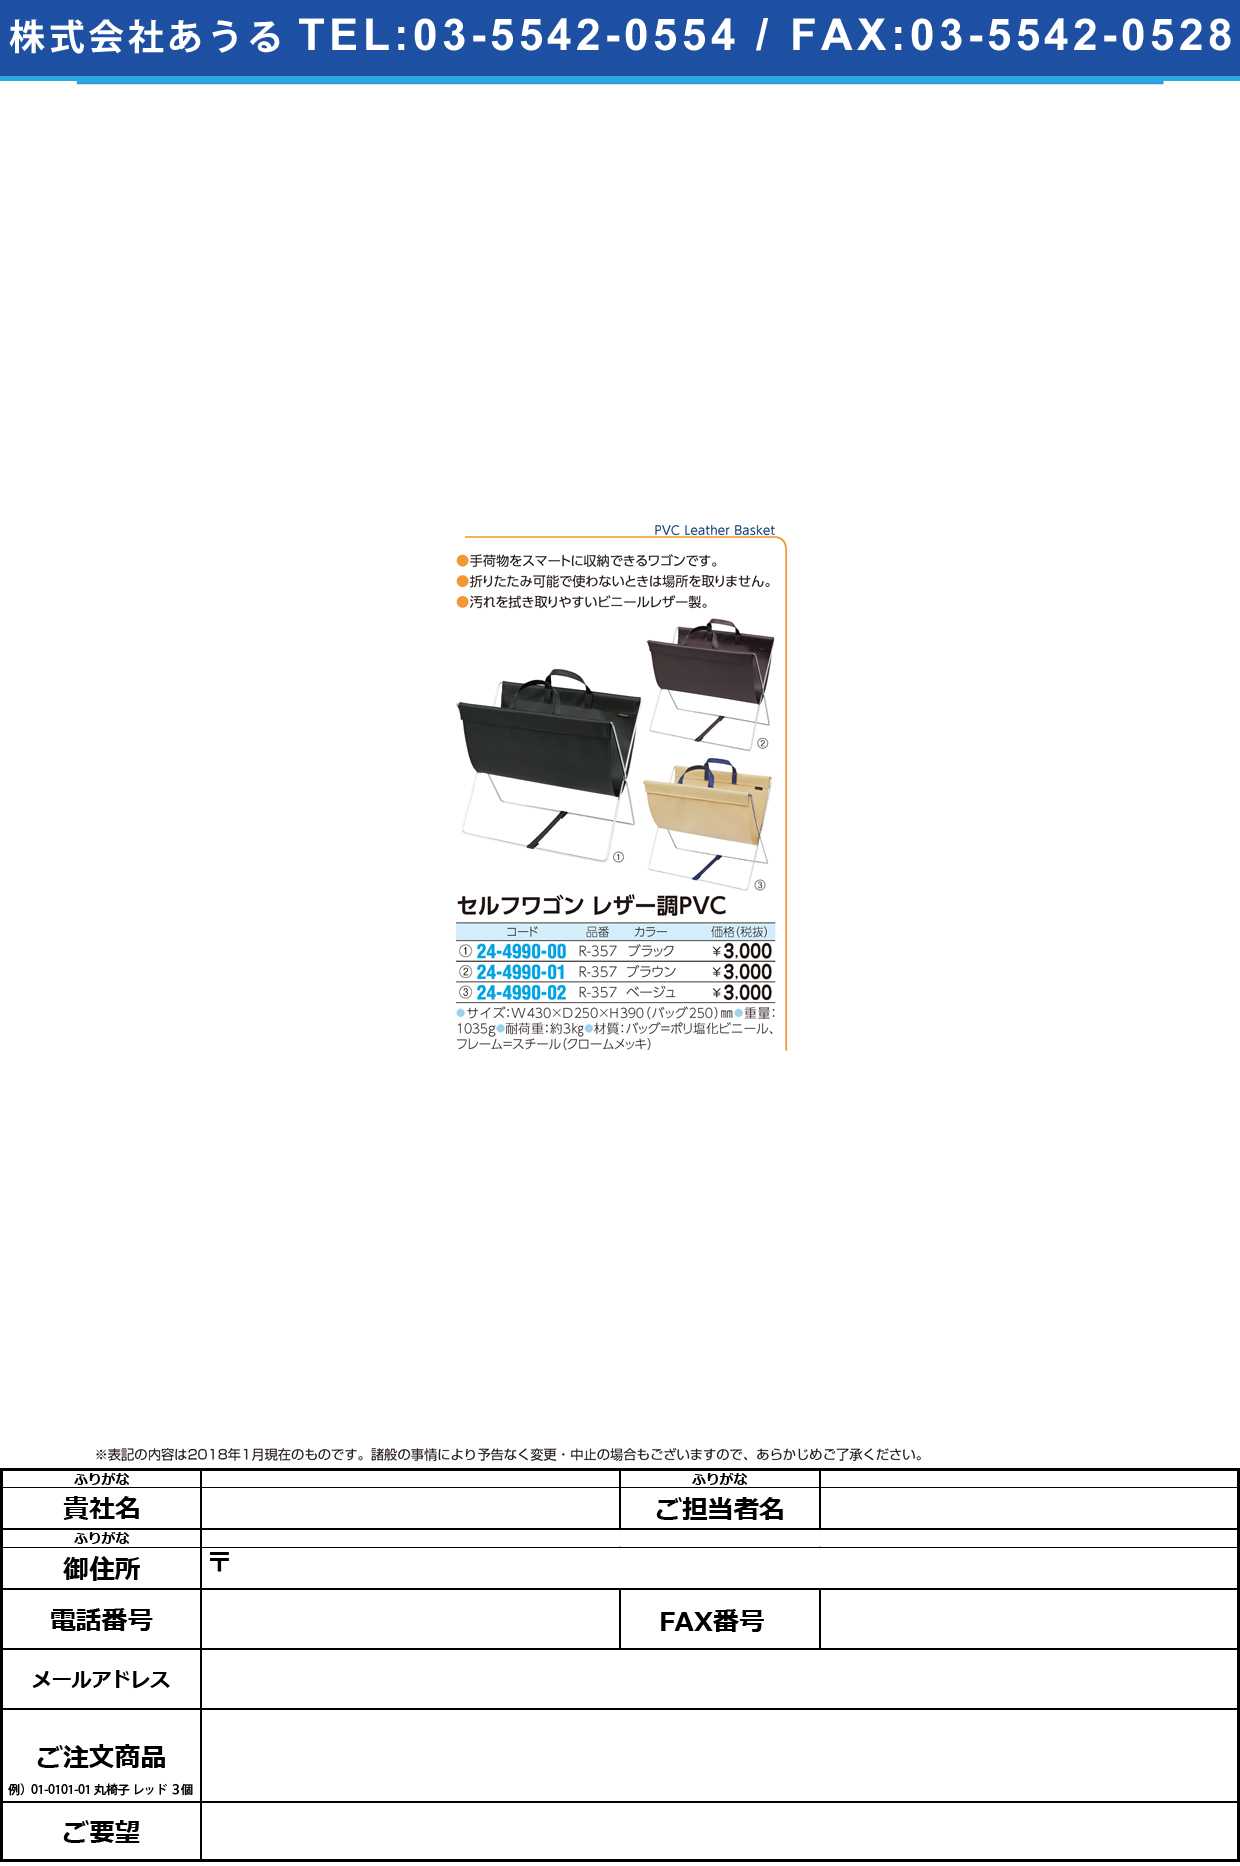 (24-4990-00)セルフワゴン（レザー調ＰＶＣ） R-357(ﾌﾞﾗｯｸ) ｾﾙﾌﾜｺﾞﾝ(ﾚｻﾞｰﾁｮｳPVC)【1個単位】【2018年カタログ商品】